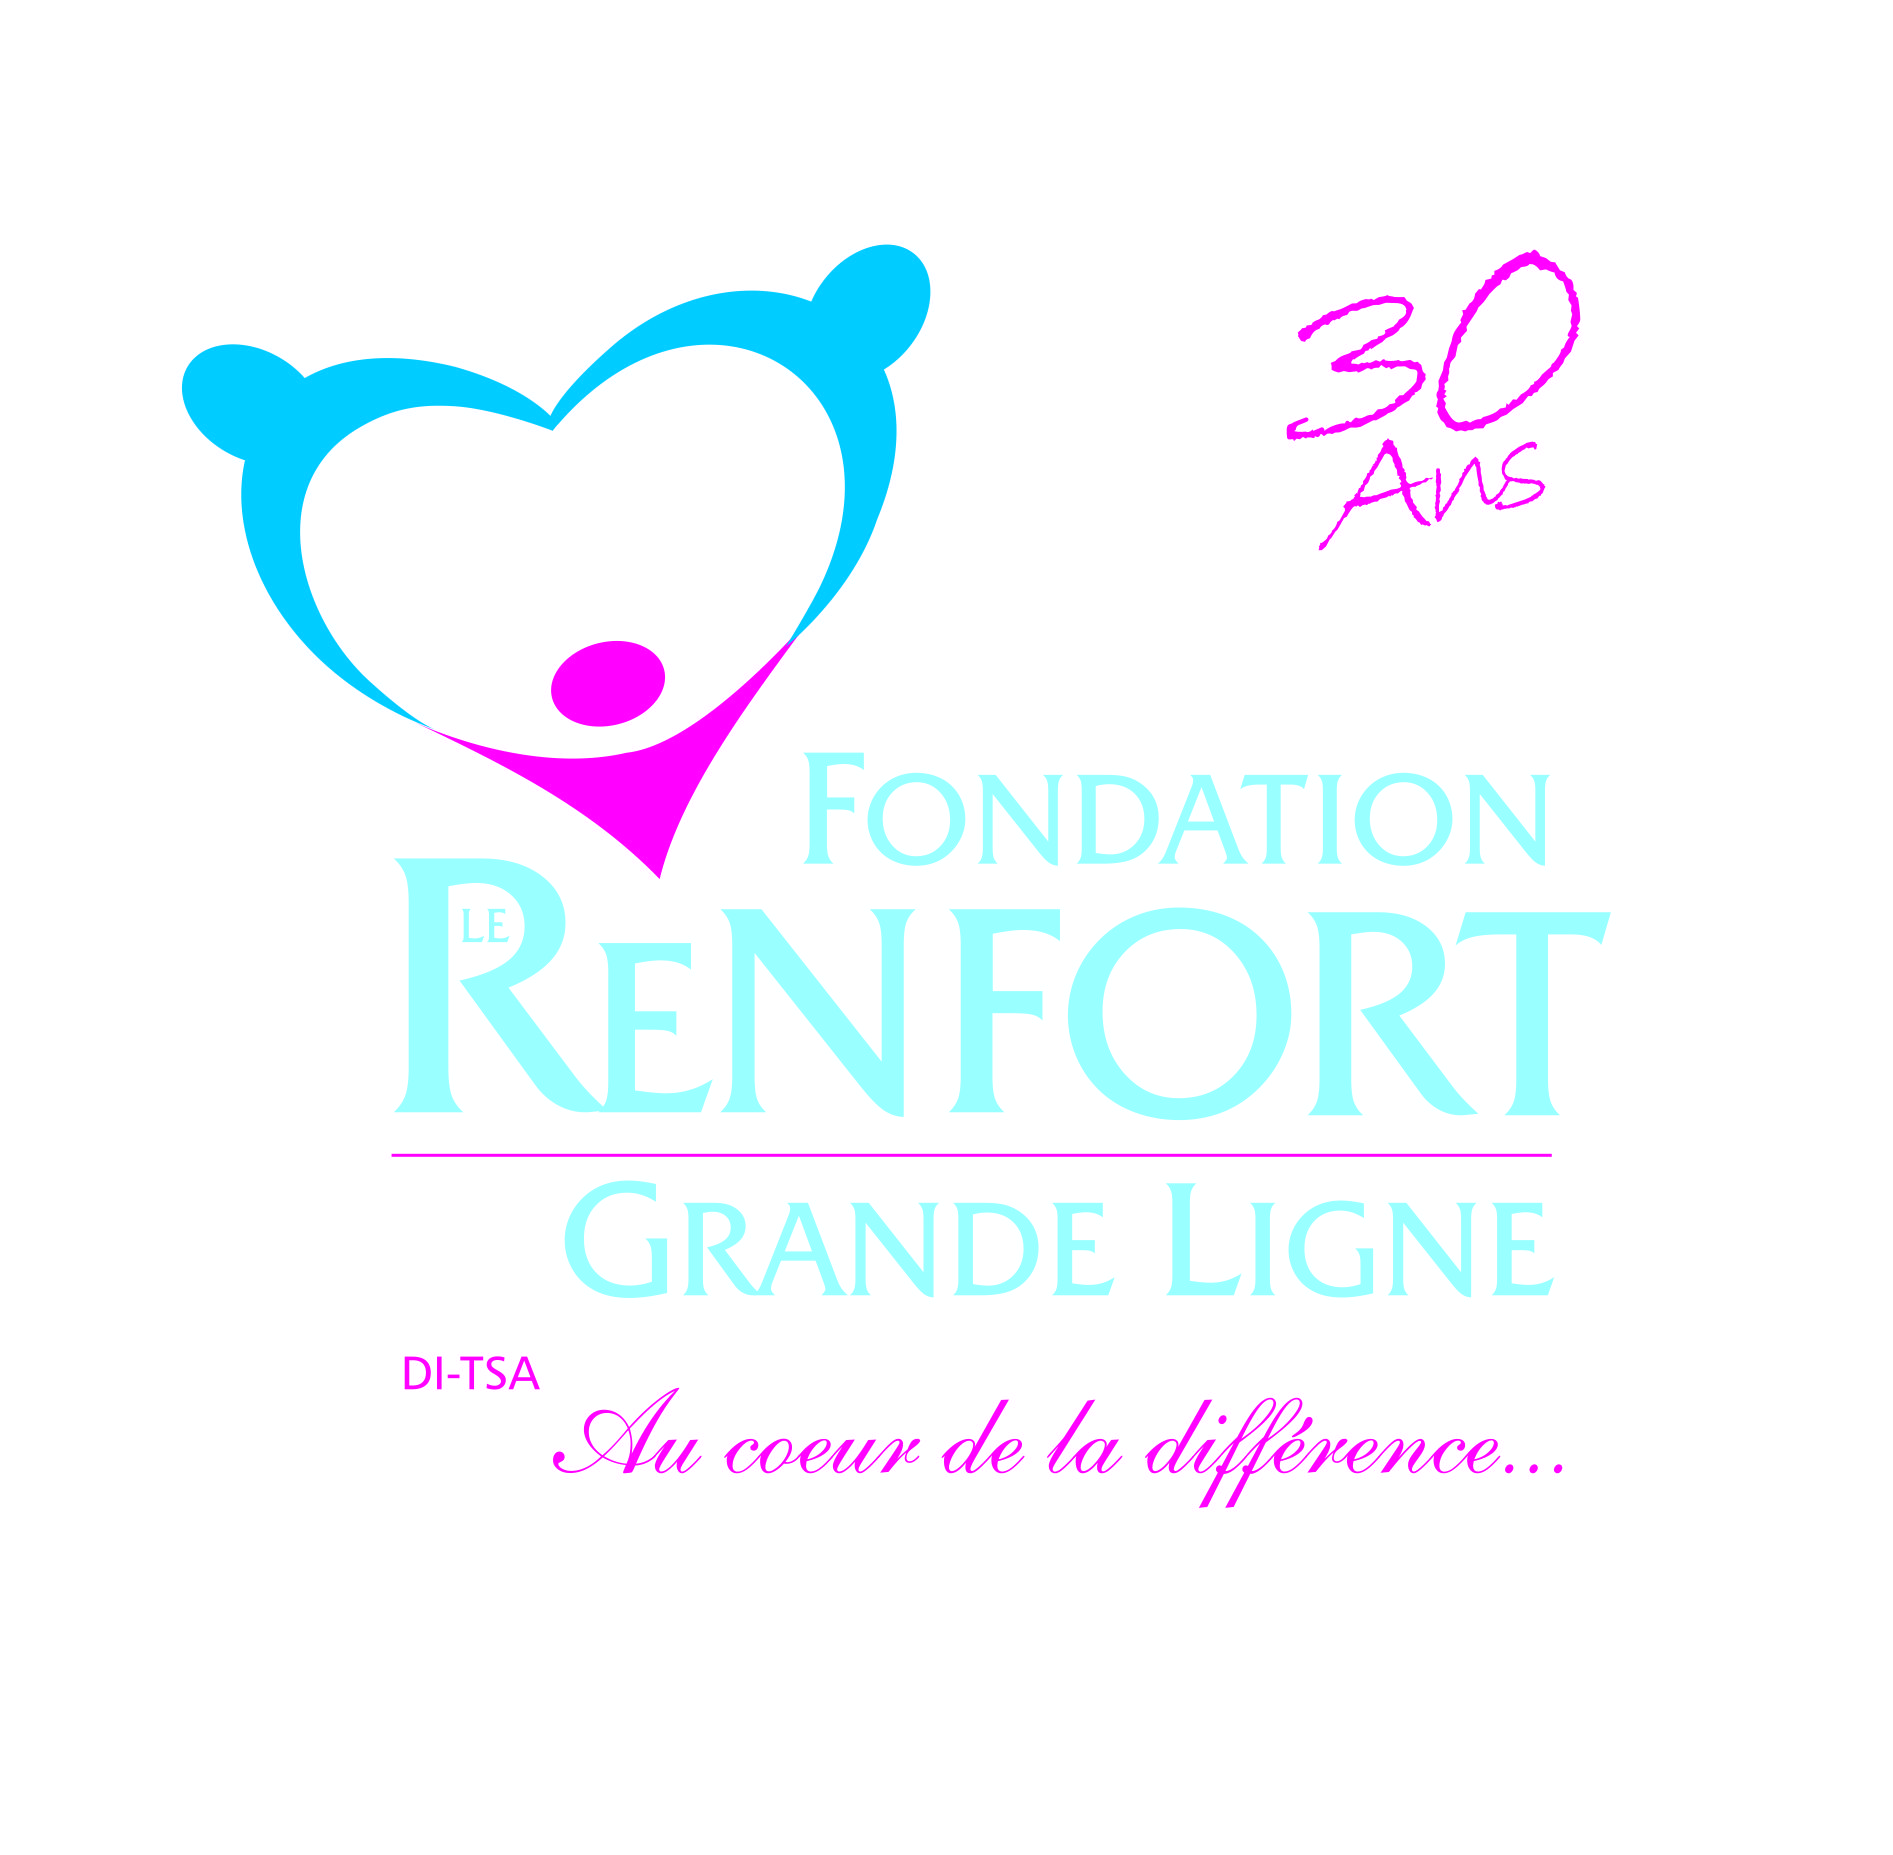 Fondation Le Renfort Grande Ligne